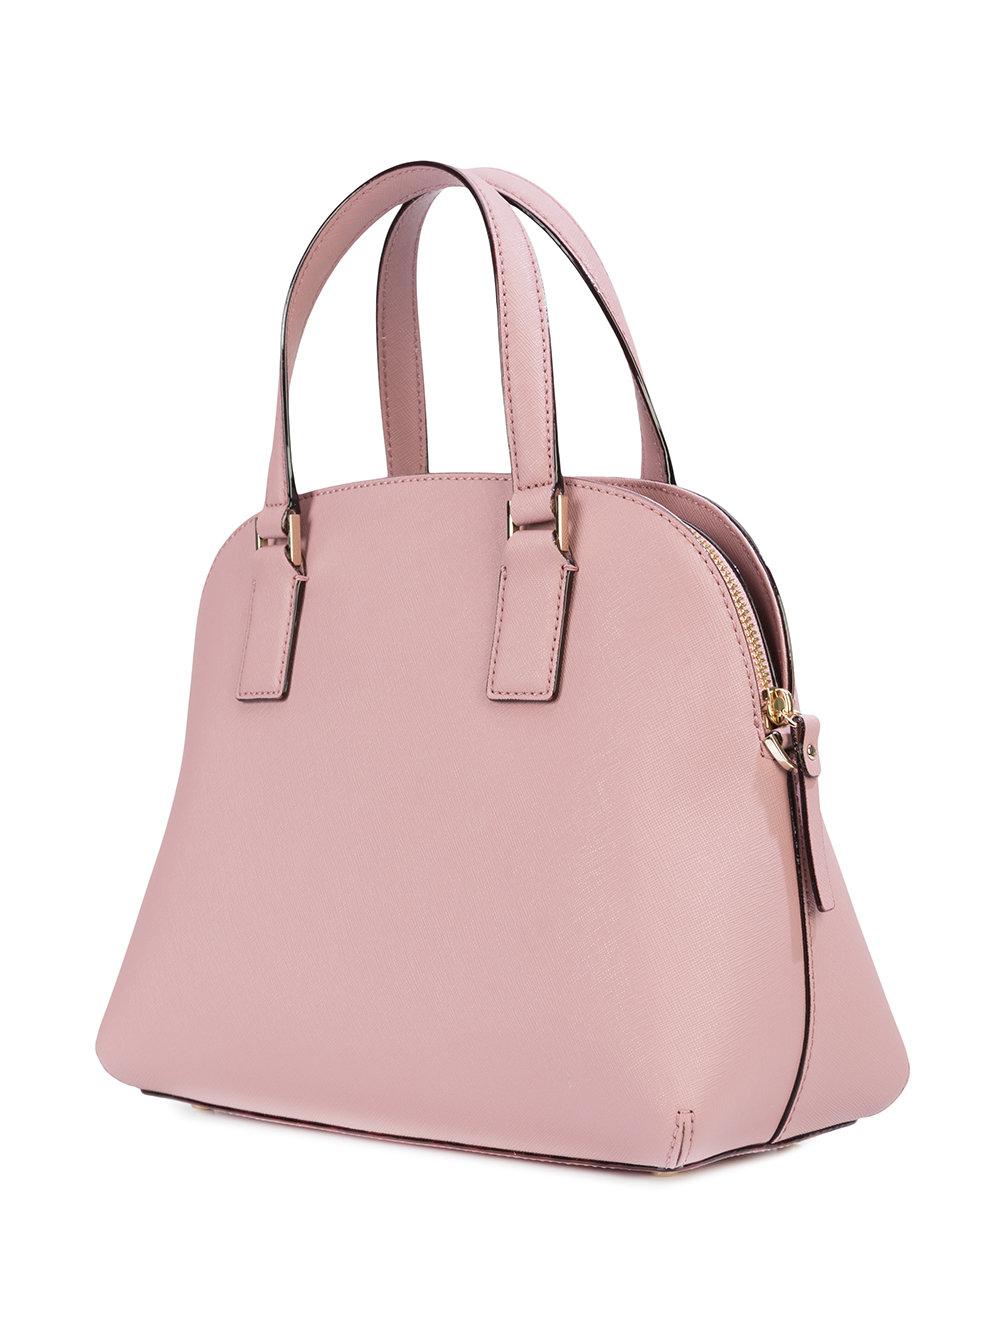 Kate Spade Leather Lottie Crossbody Bag in Pink & Purple (Pink) - Lyst